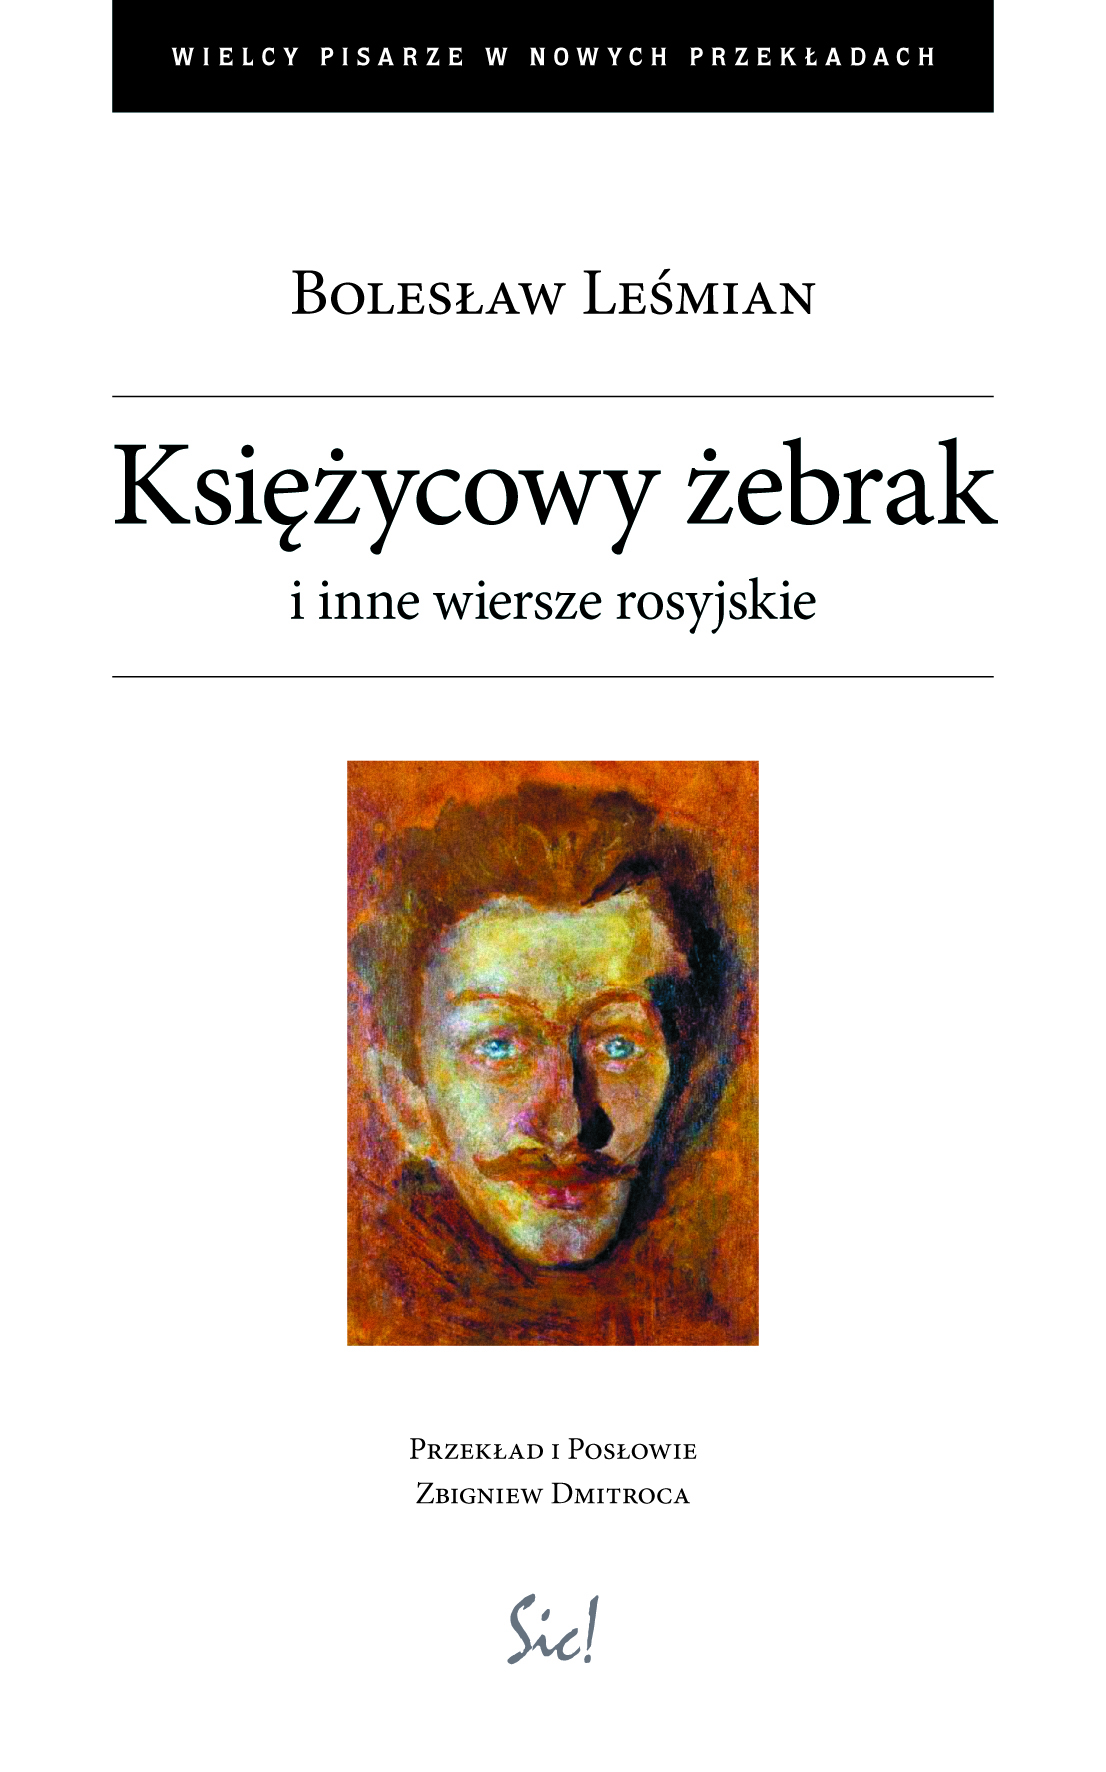 Bolesław Leśmian, „Księżycowy żebrak i inne wiersze rosyjskie”(źródło: materiały prasowe teatru)